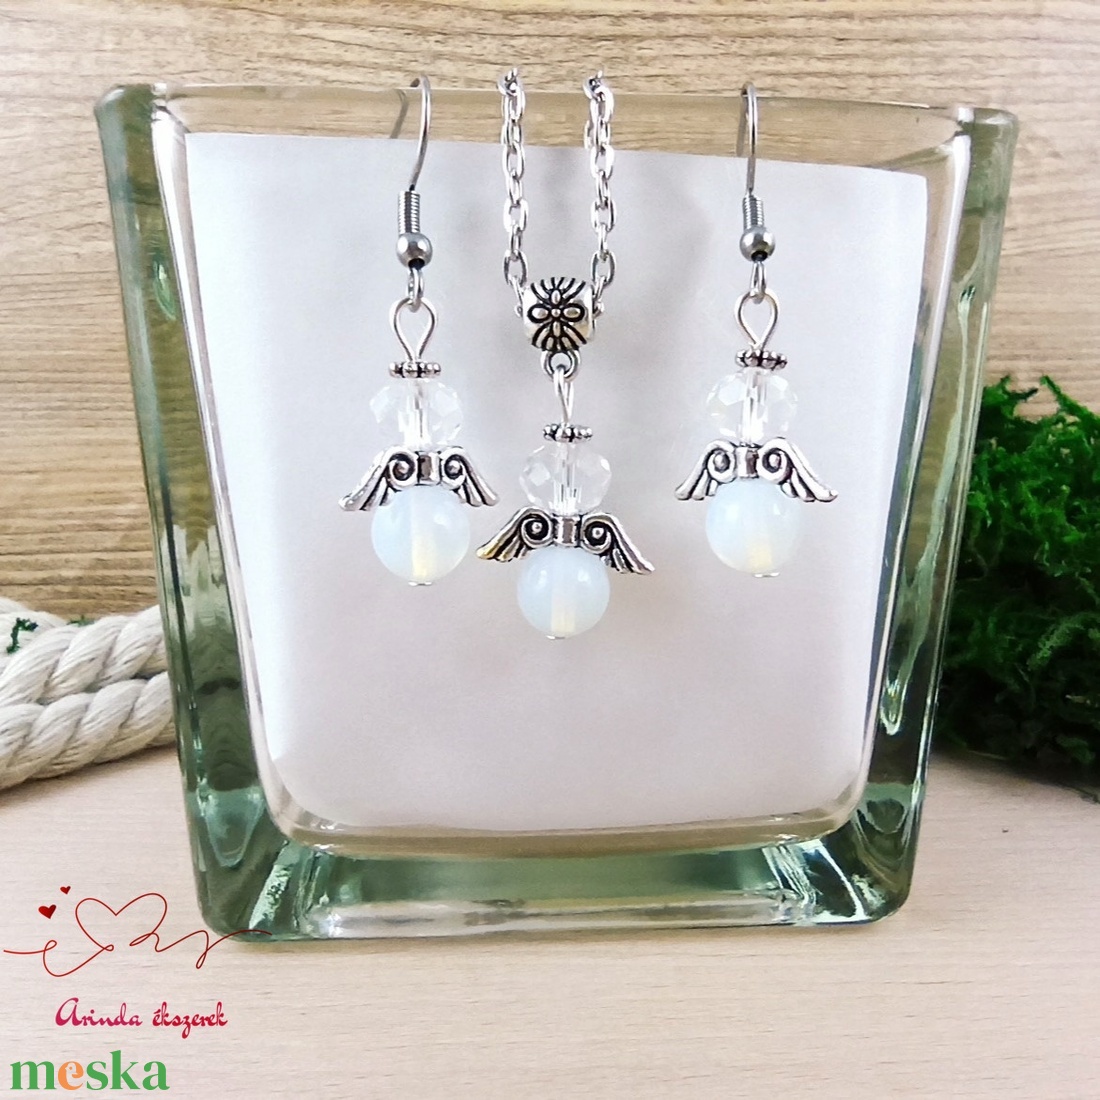 Nőiesség opalit ásvány angyal nyaklánc fülbevaló szett karácsonyi ajándék ötlet nőnek lánynak - ékszer - ékszerszett - Meska.hu